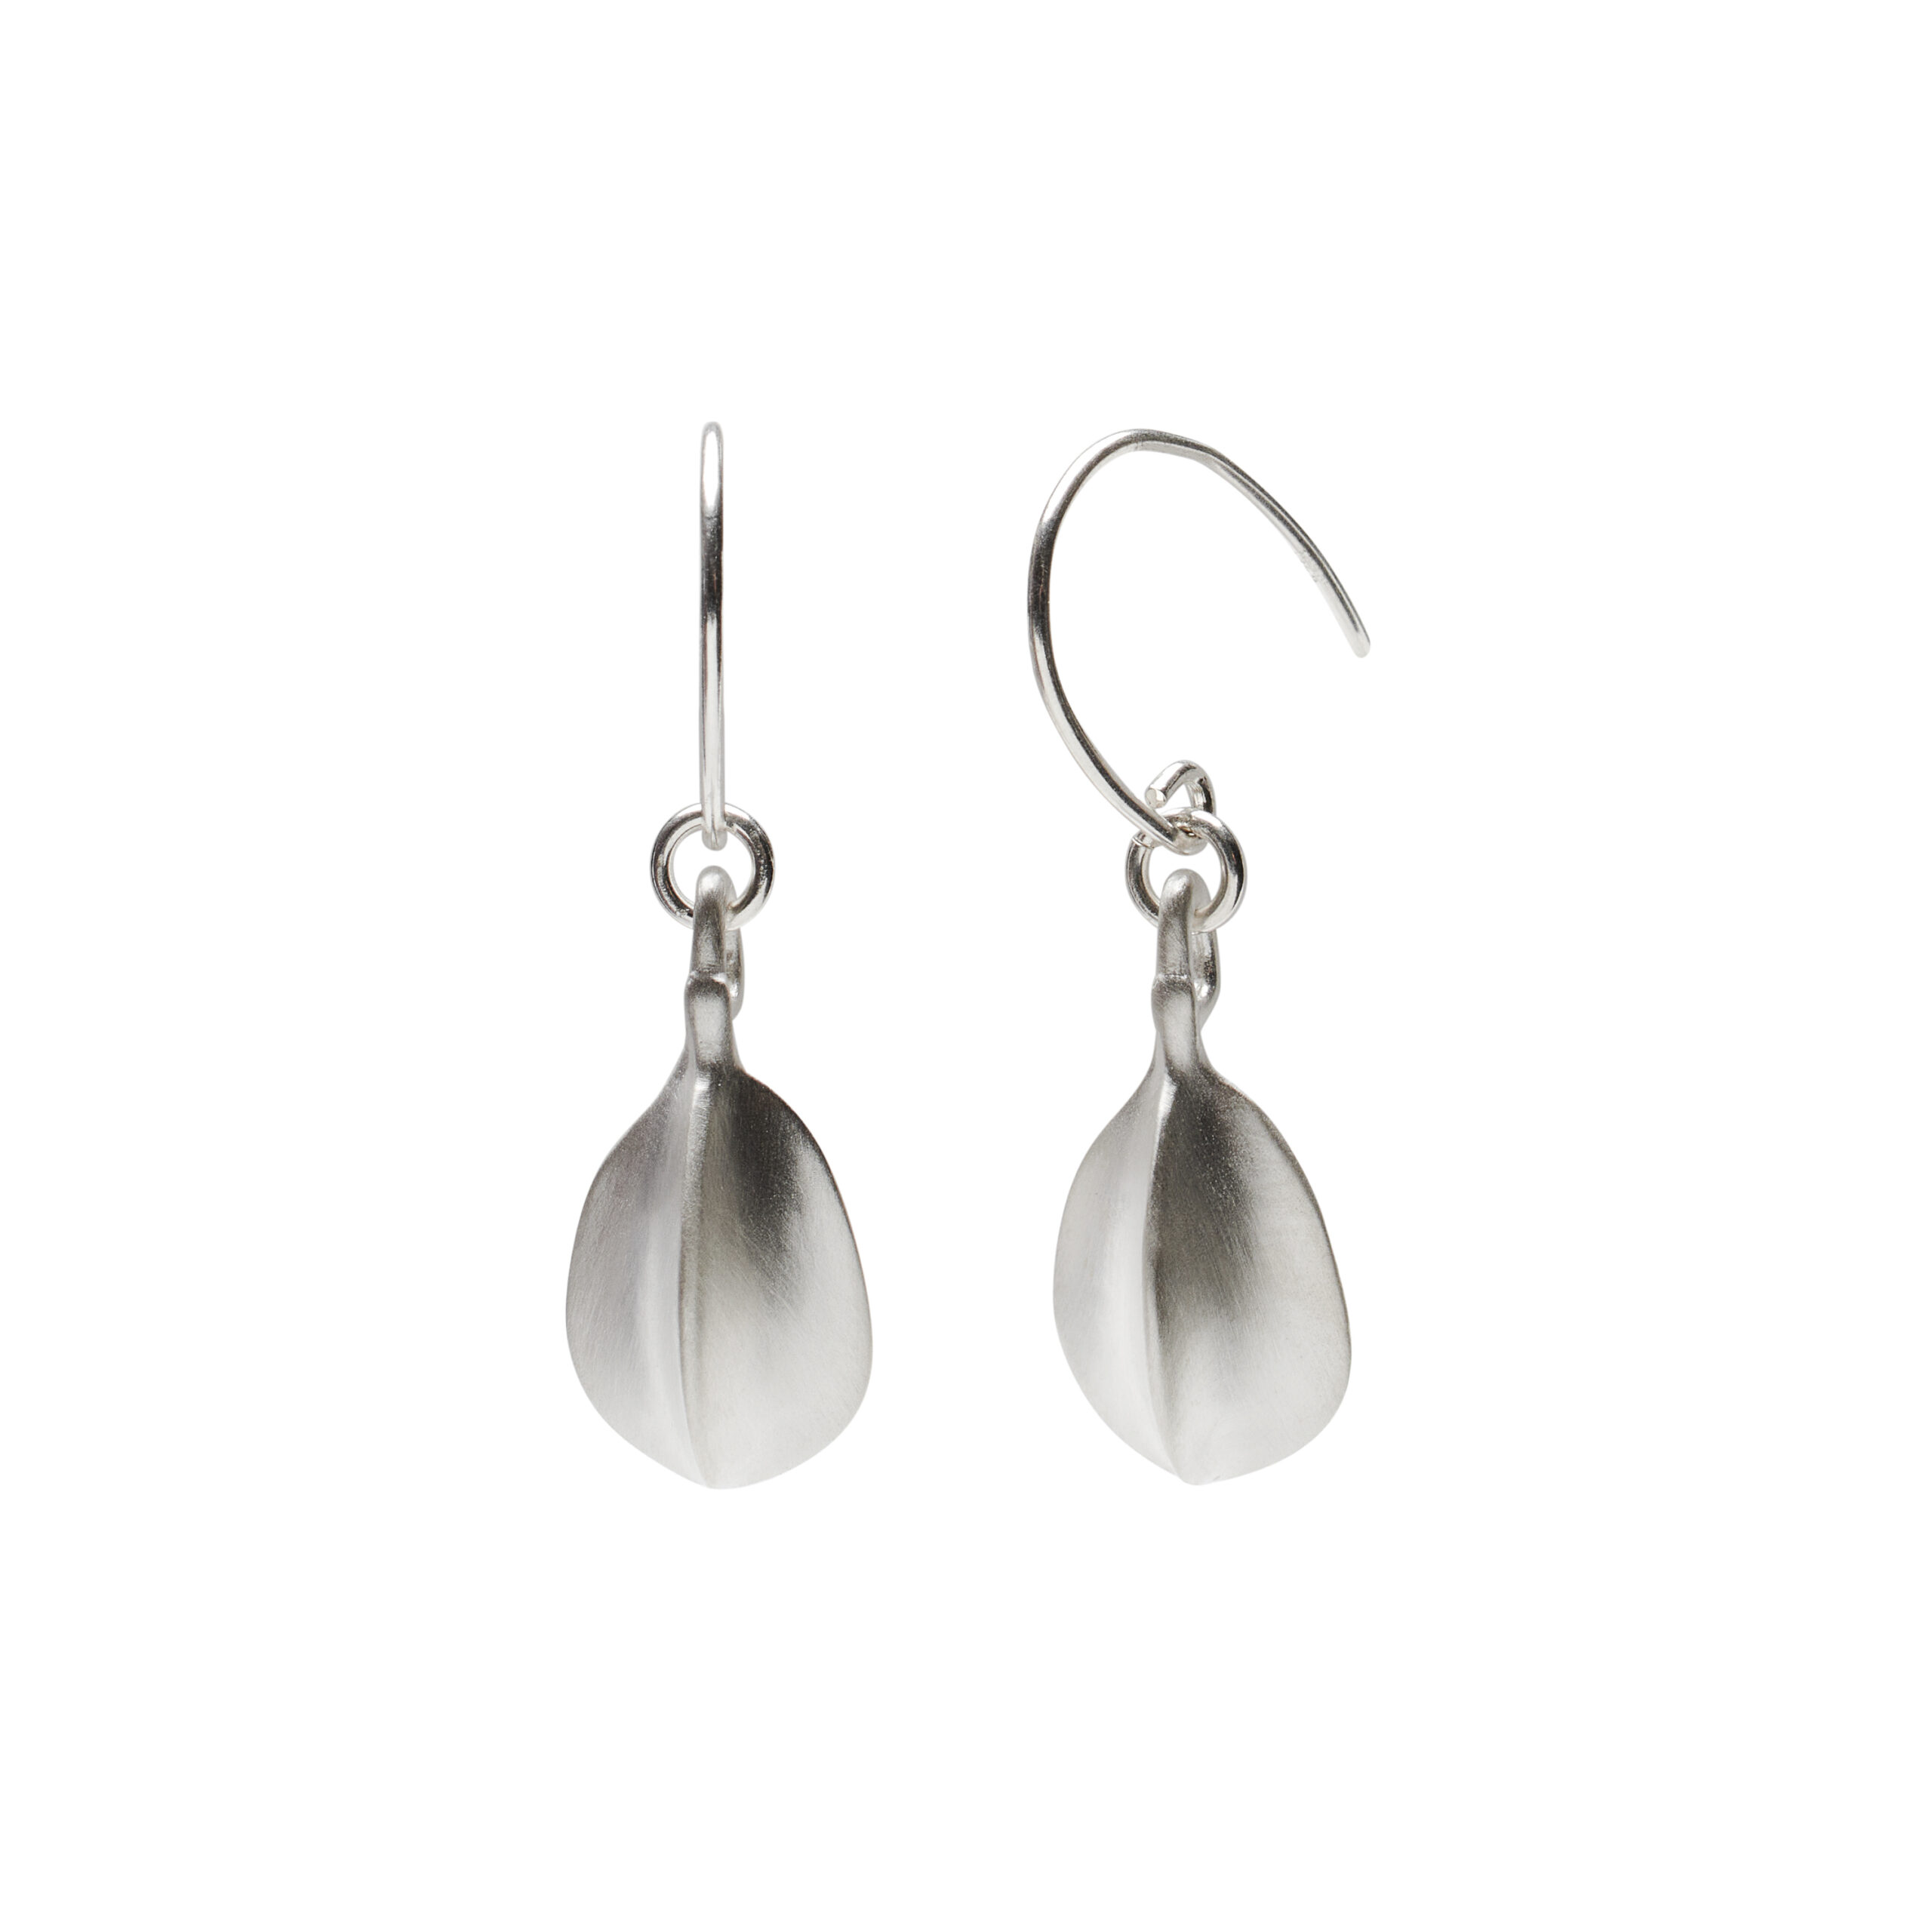 Silver beech nut earrings